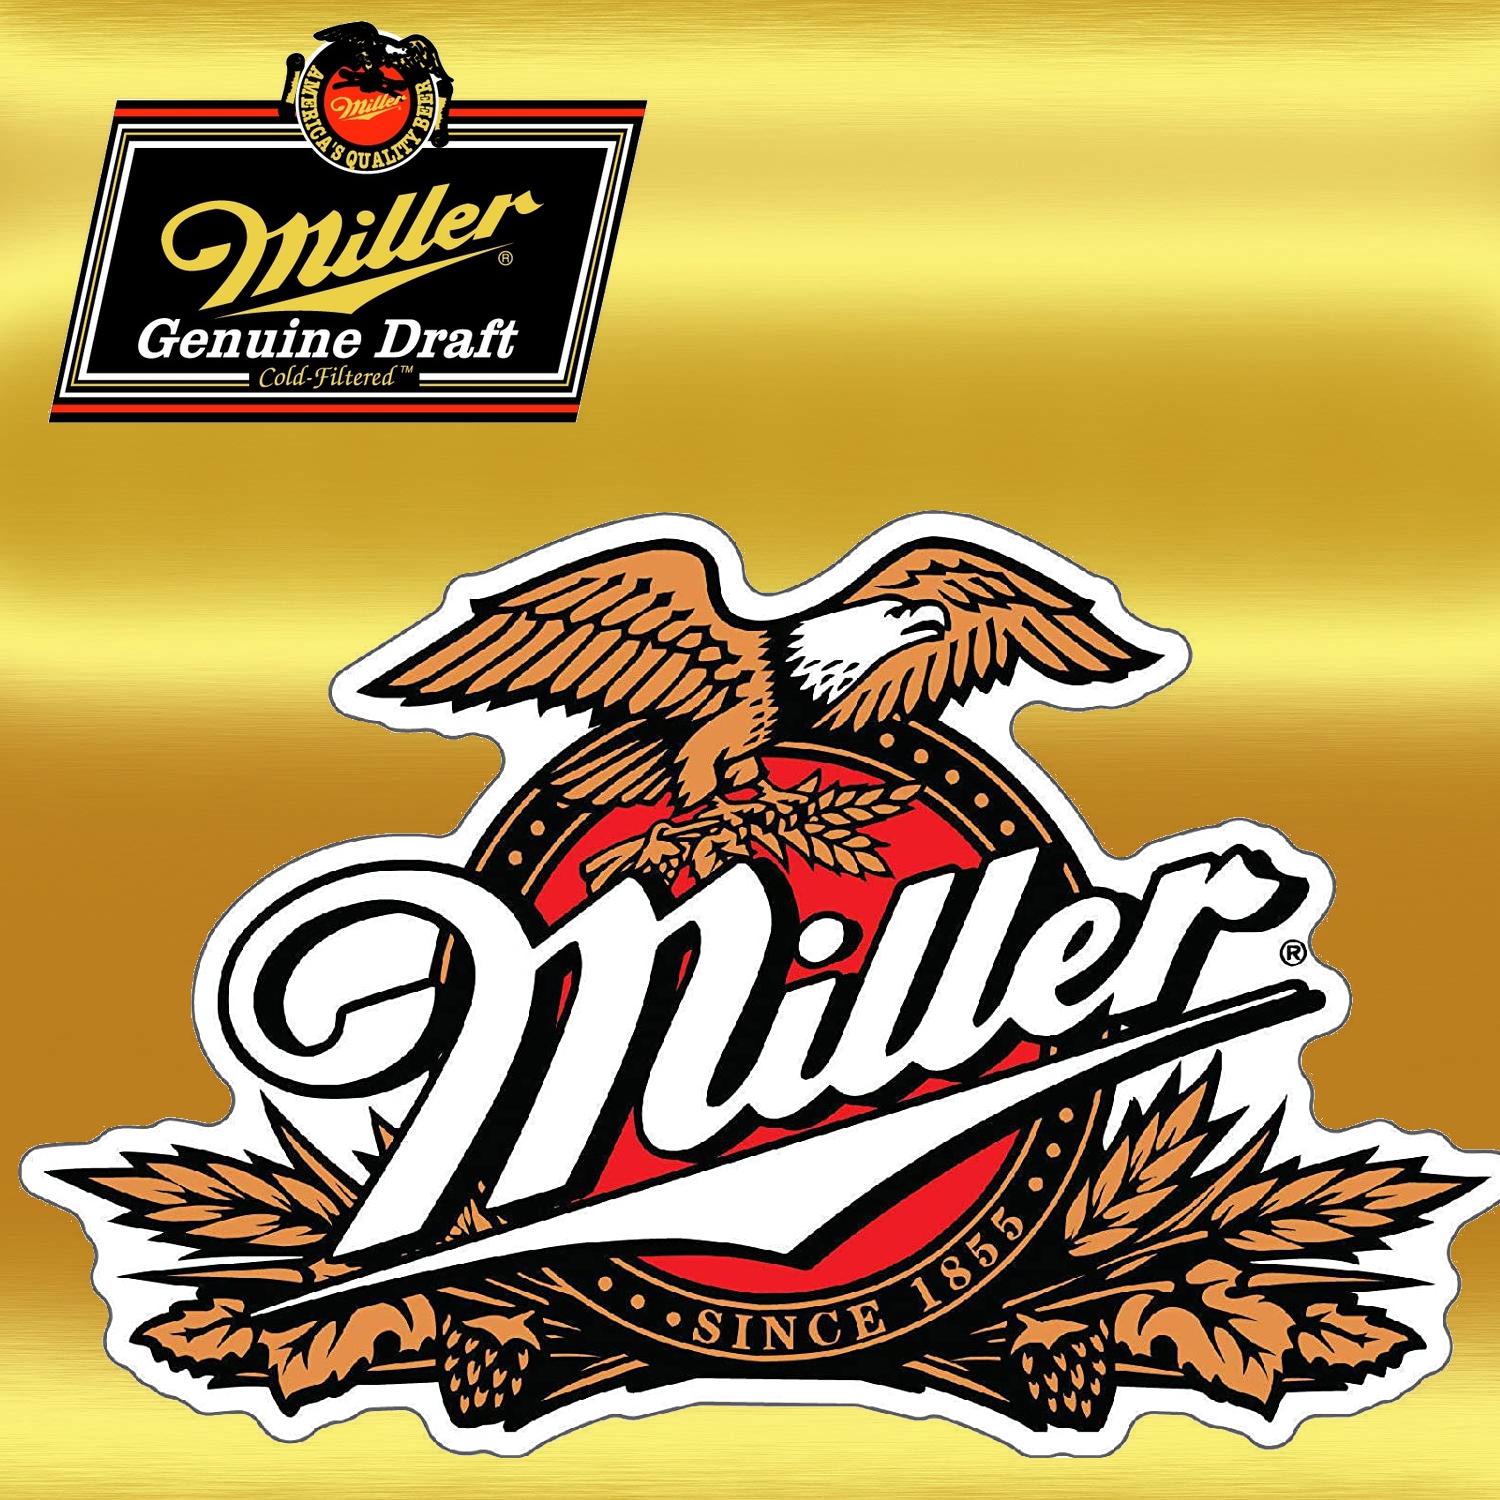 Miller Genuine draft logo.jpg